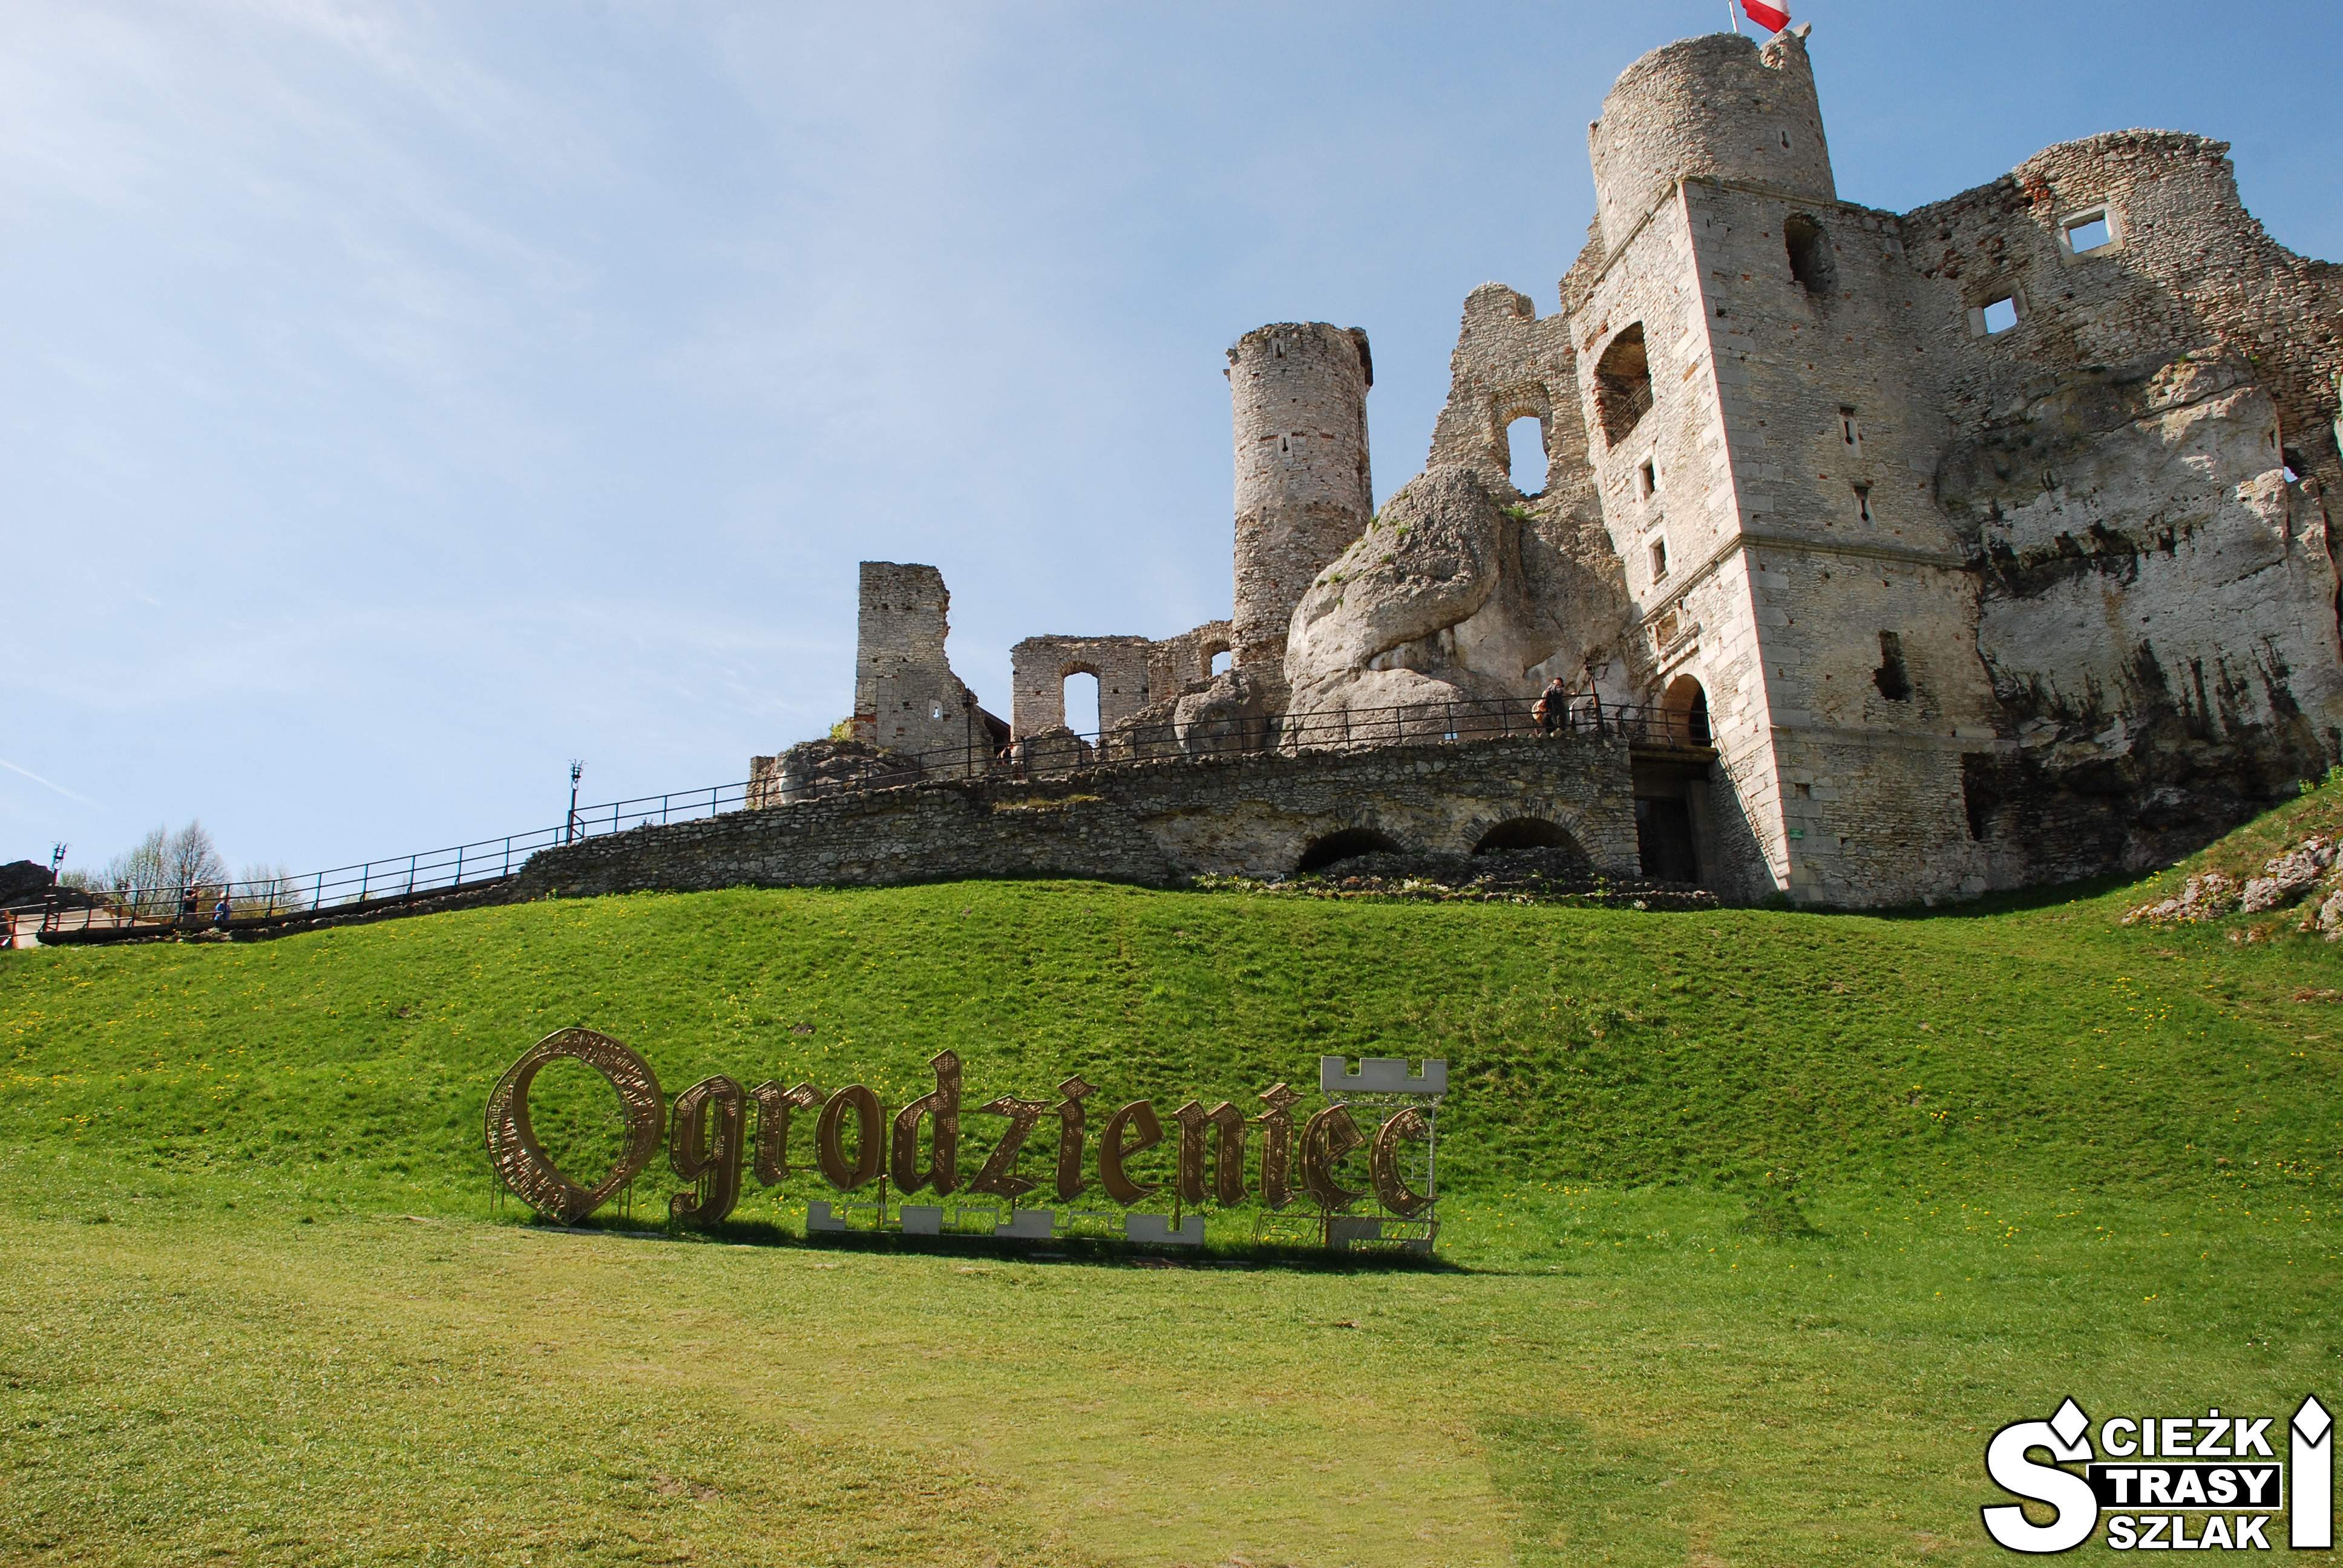 Duży, złoty napis z metalu “Ogrodzieniec” na wzgórzu gdzie wzniesiono Zamek w Podzamczu